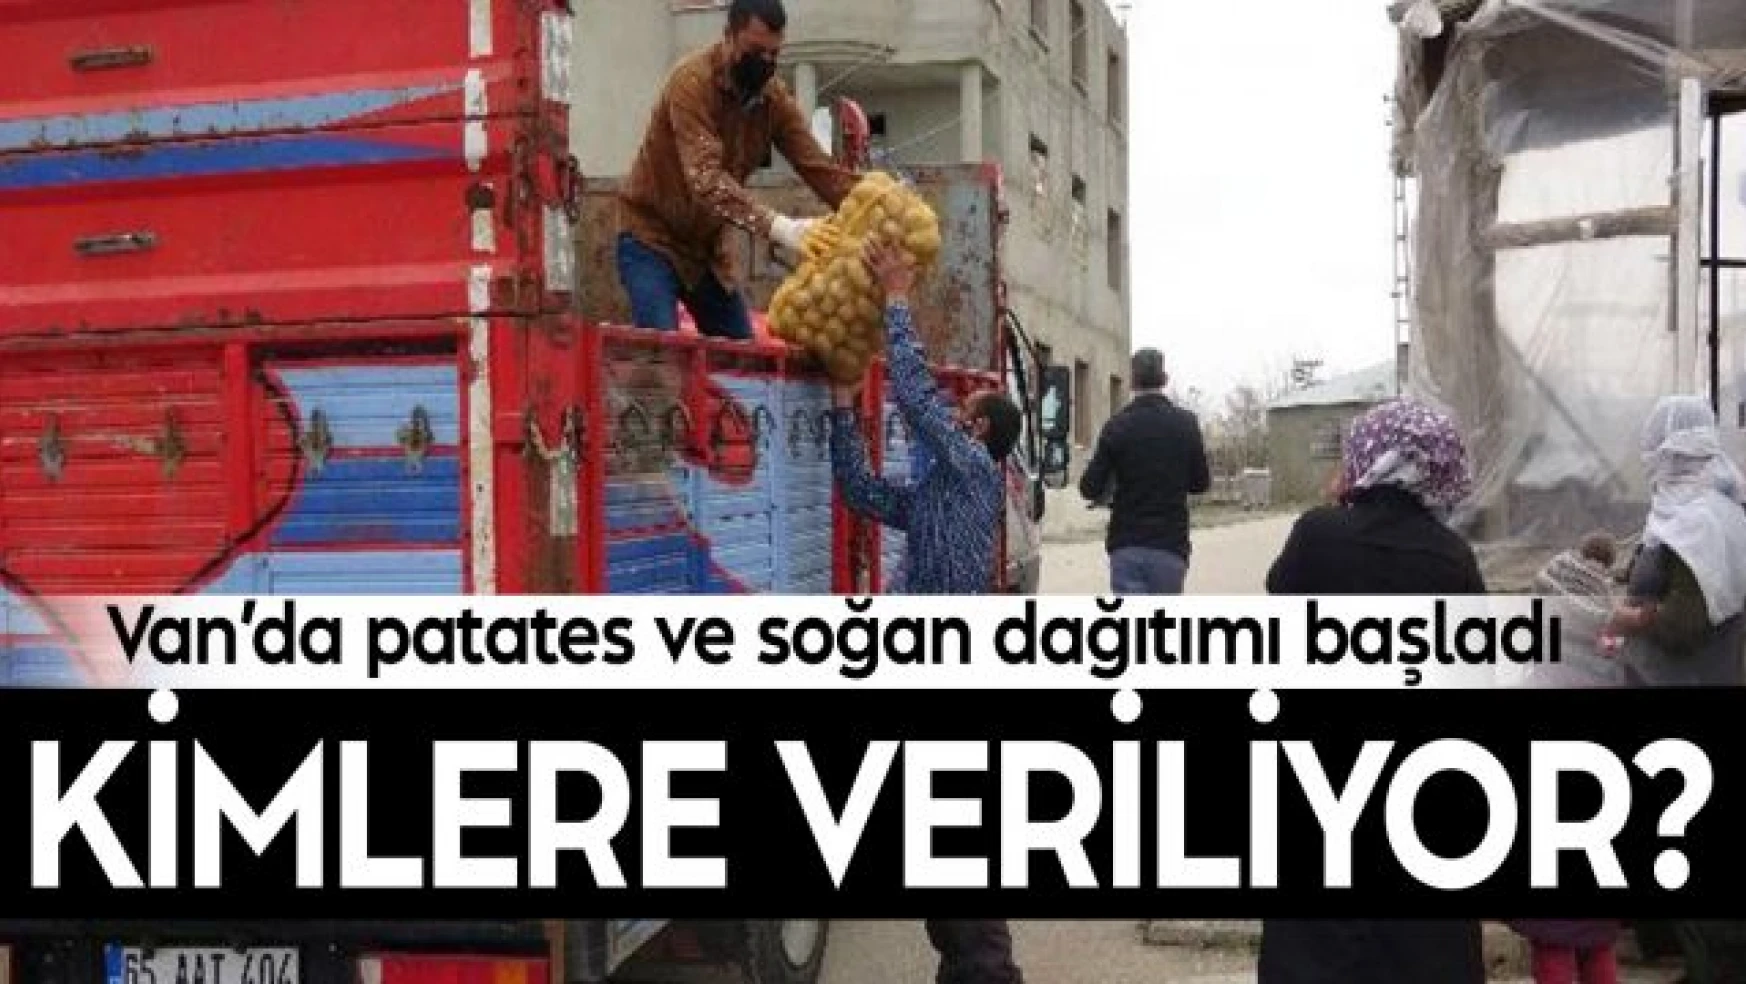 Van'da ücretsiz soğan ve patates dağıtımı başladı